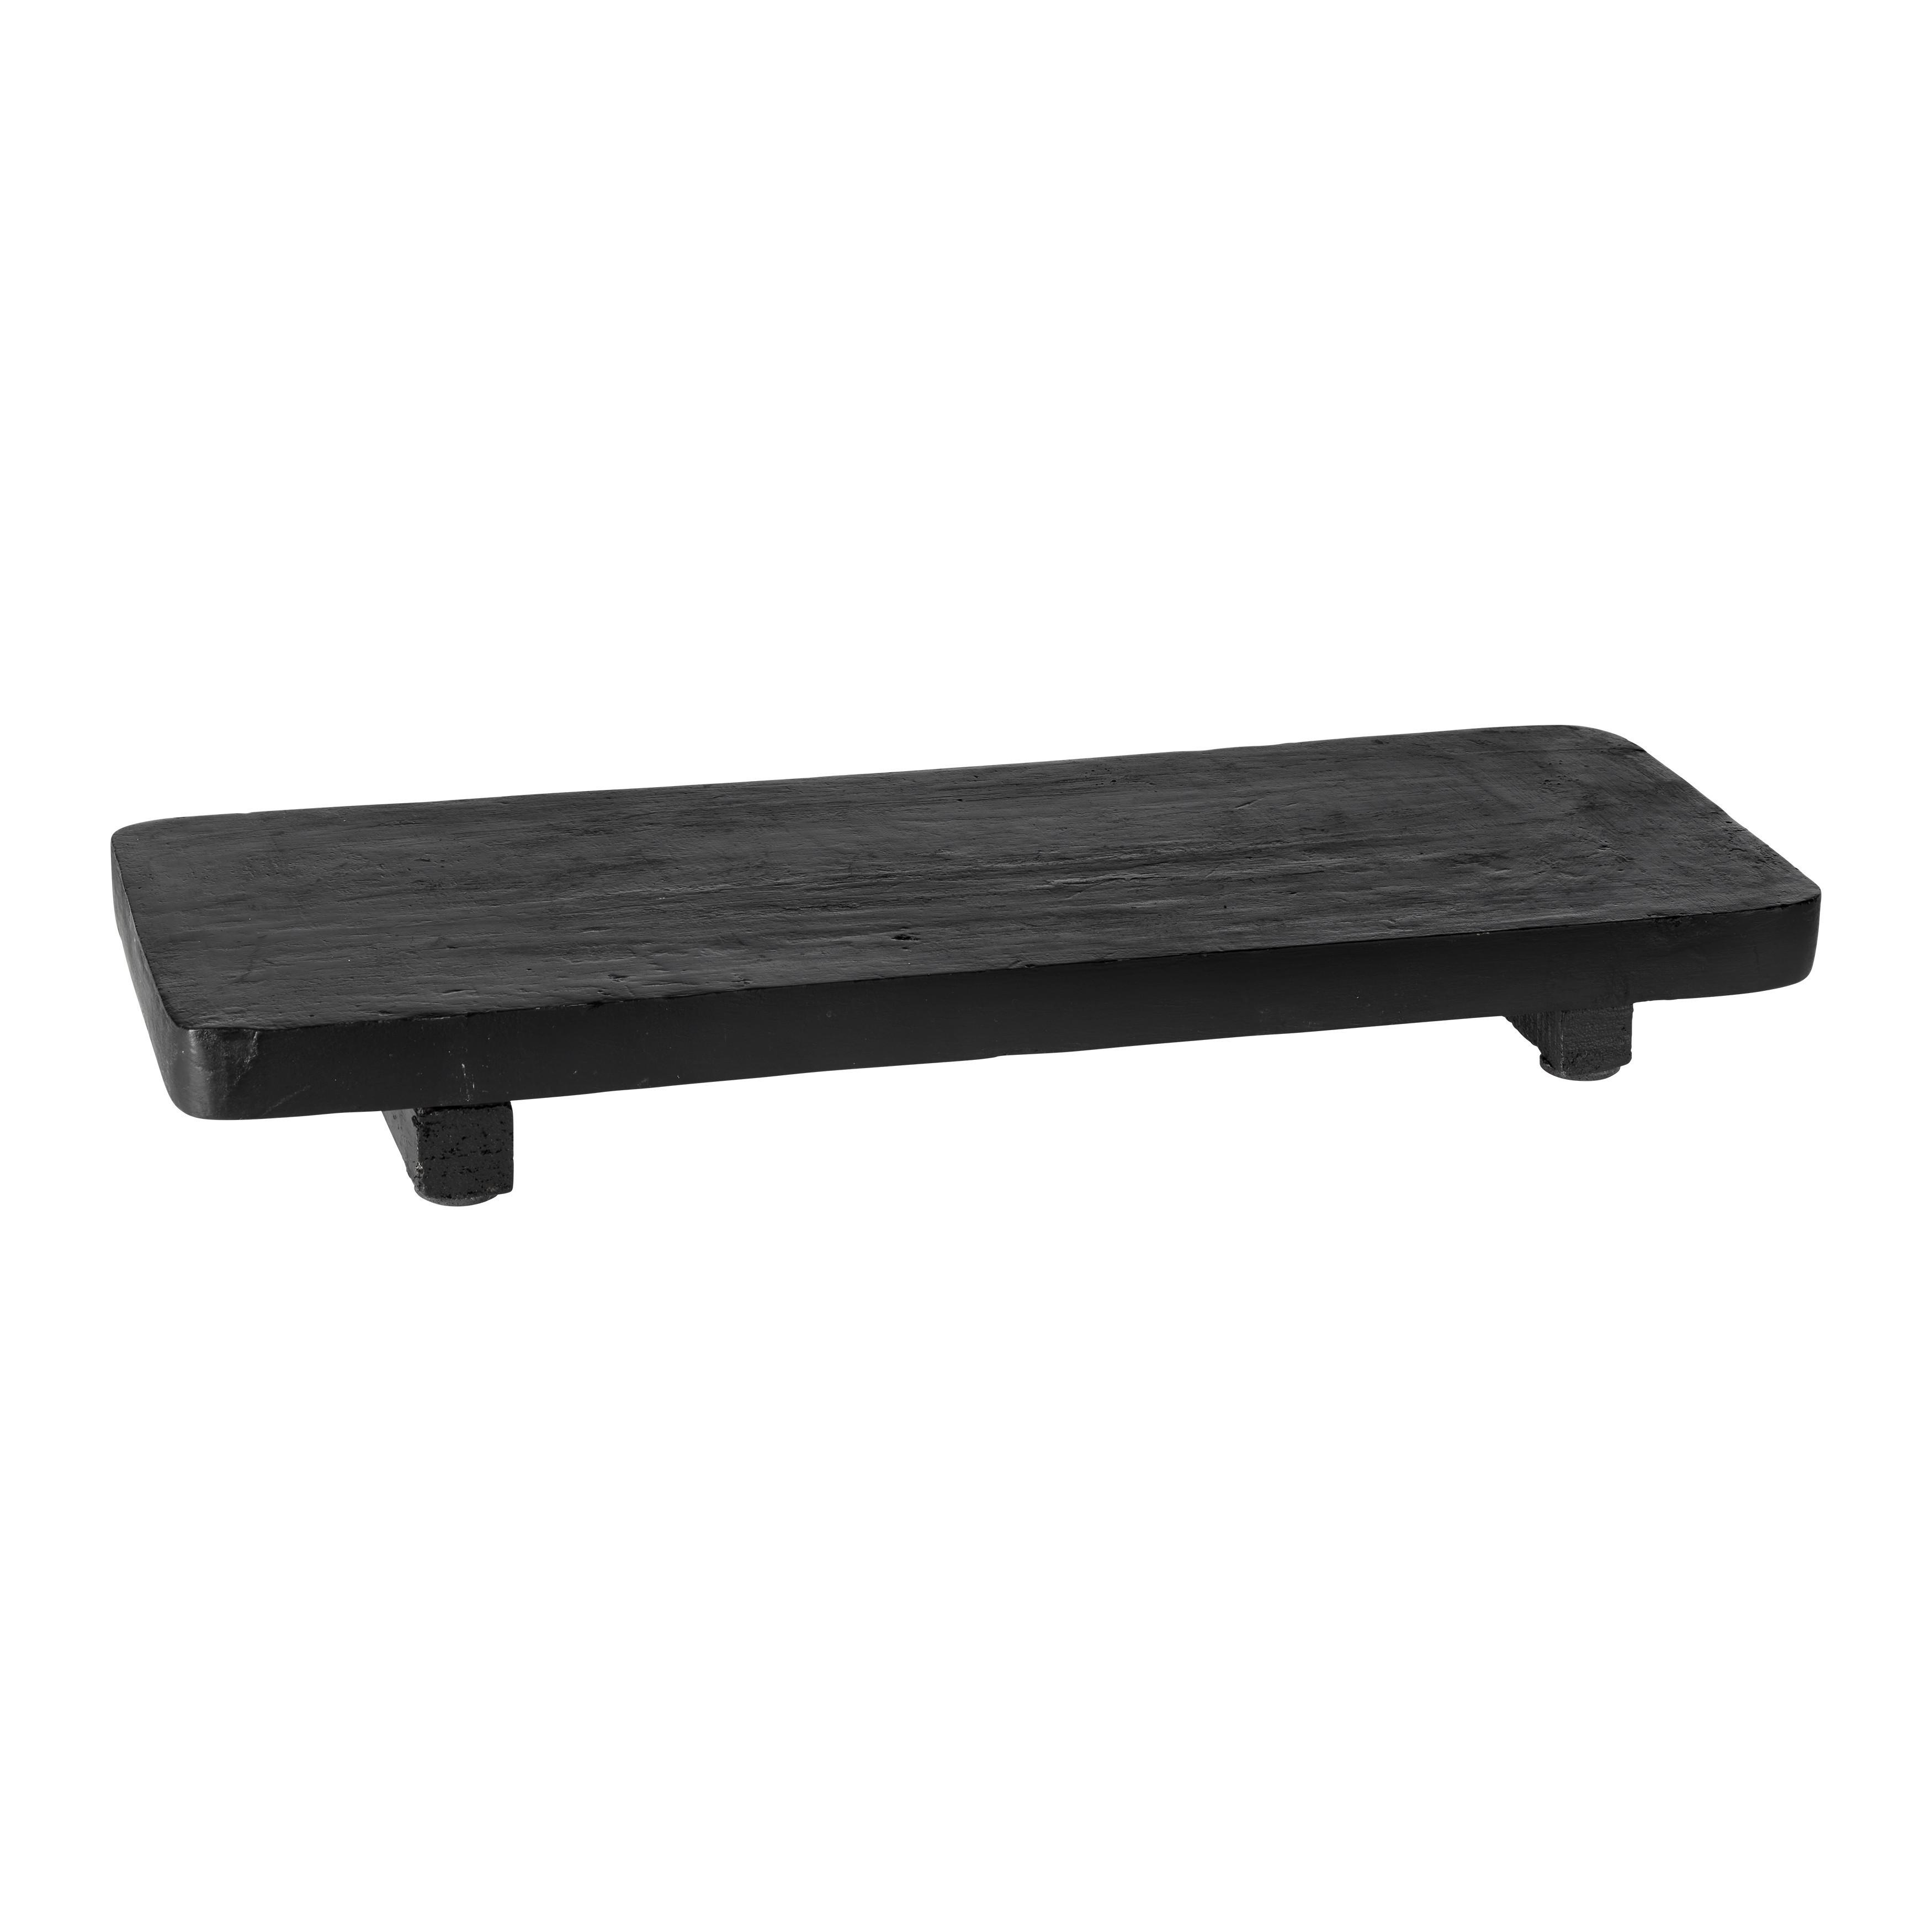 Dekorační Talíŕ Esra - černá, Basics, dřevo (38/15/4cm) - Modern Living